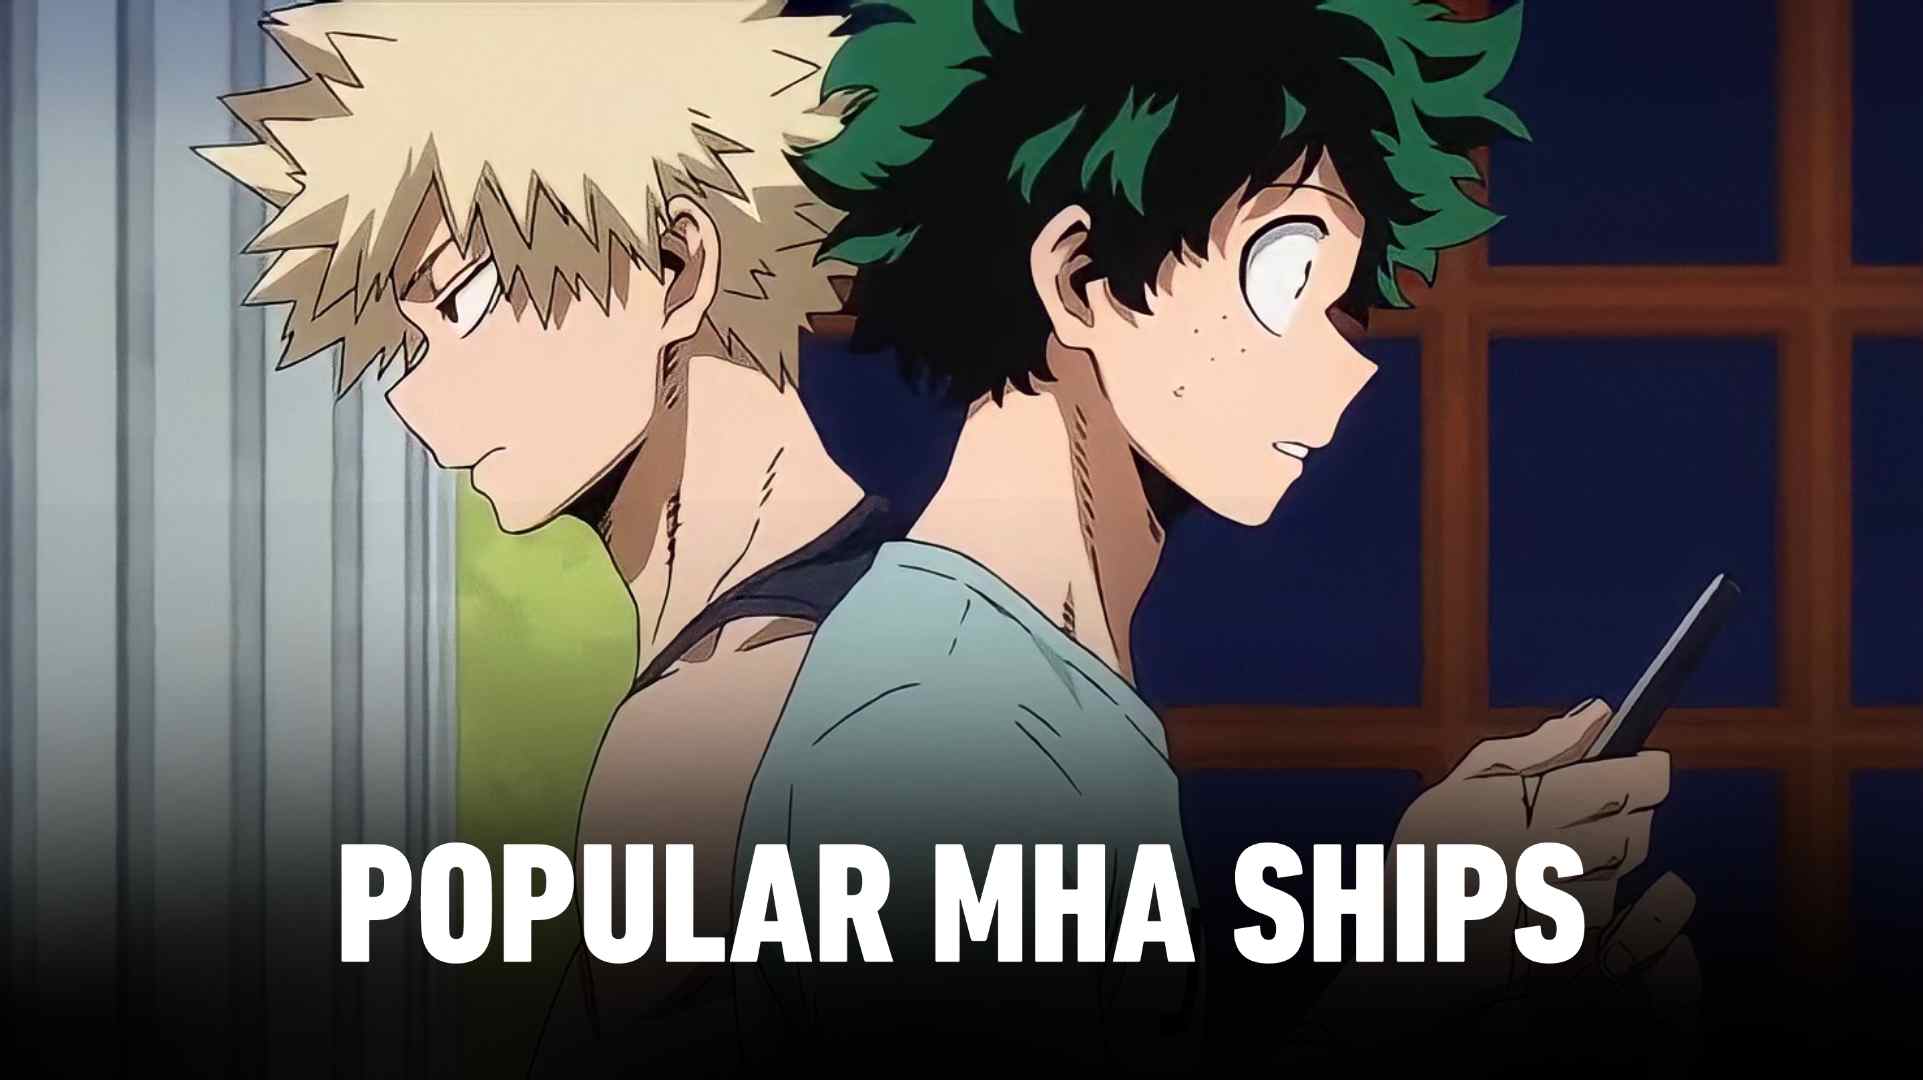 mha ships